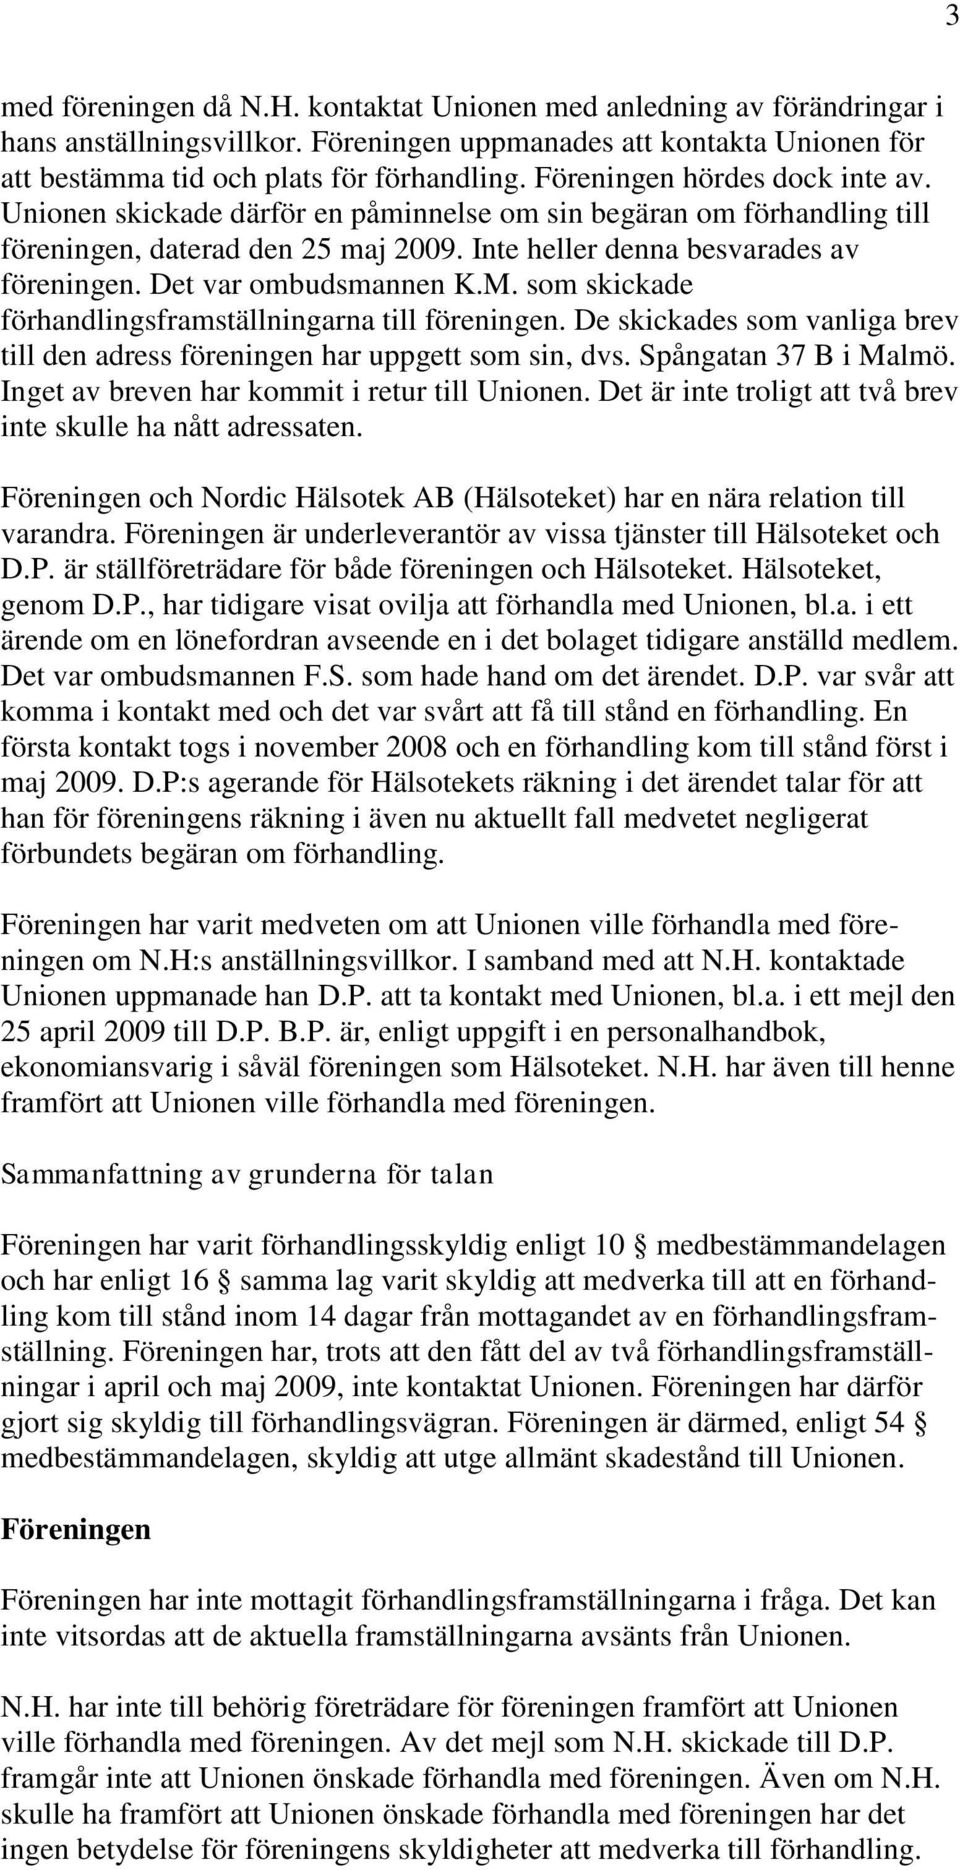 Det var ombudsmannen K.M. som skickade förhandlingsframställningarna till föreningen. De skickades som vanliga brev till den adress föreningen har uppgett som sin, dvs. Spångatan 37 B i Malmö.